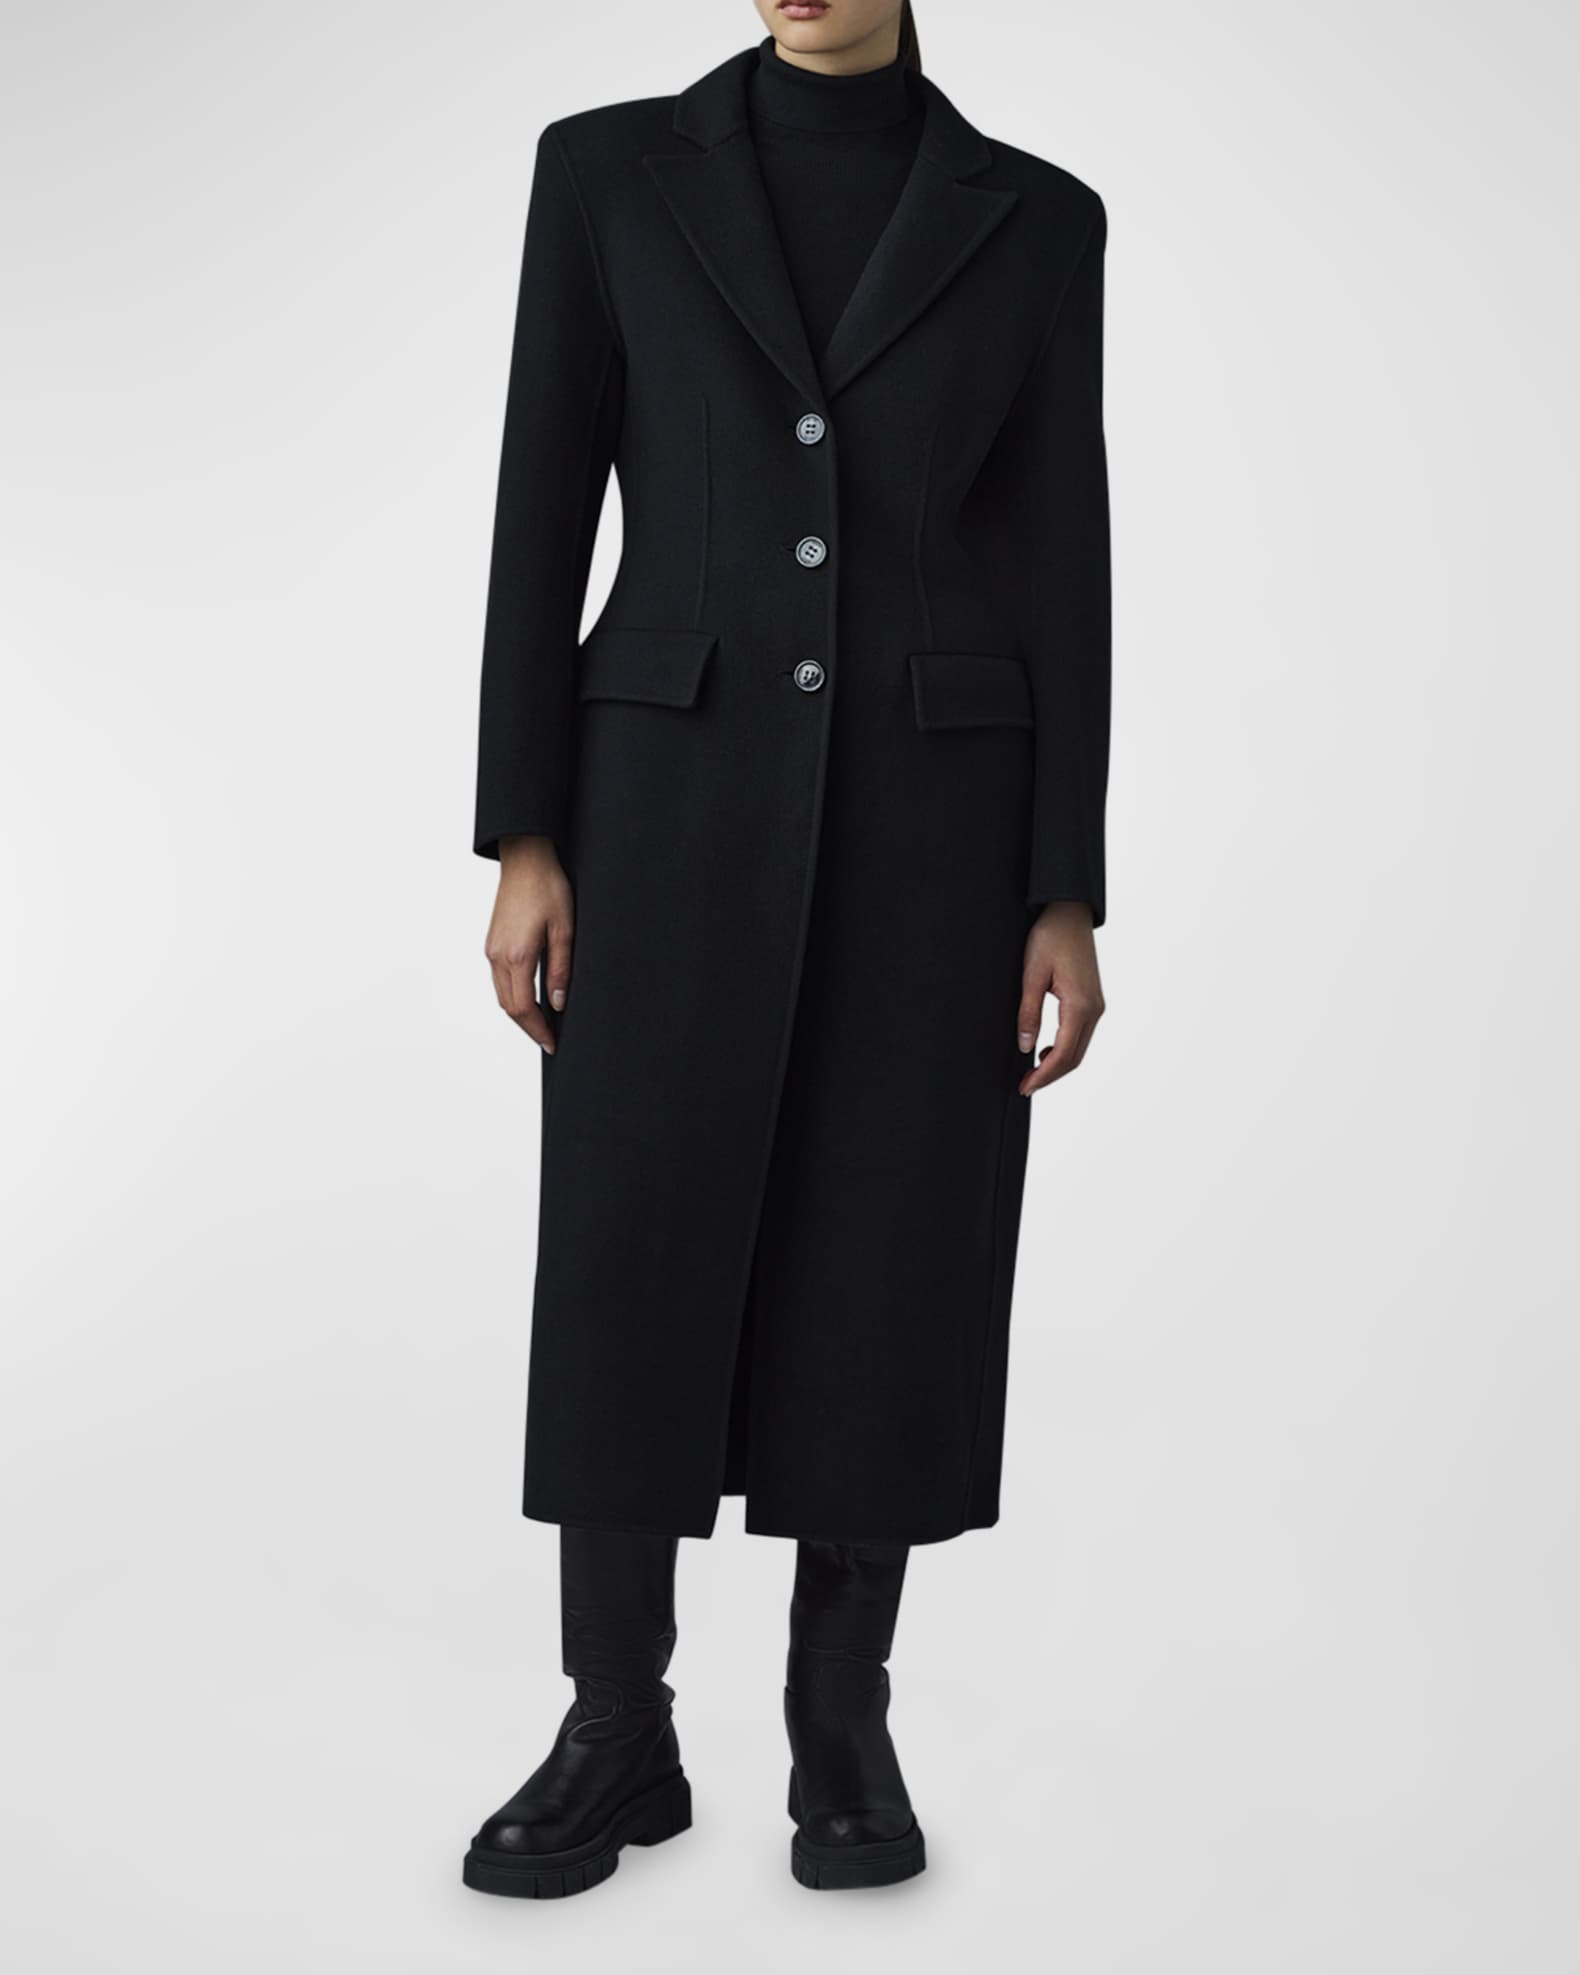 Louis Vuitton Removable Collar Double Face Coat